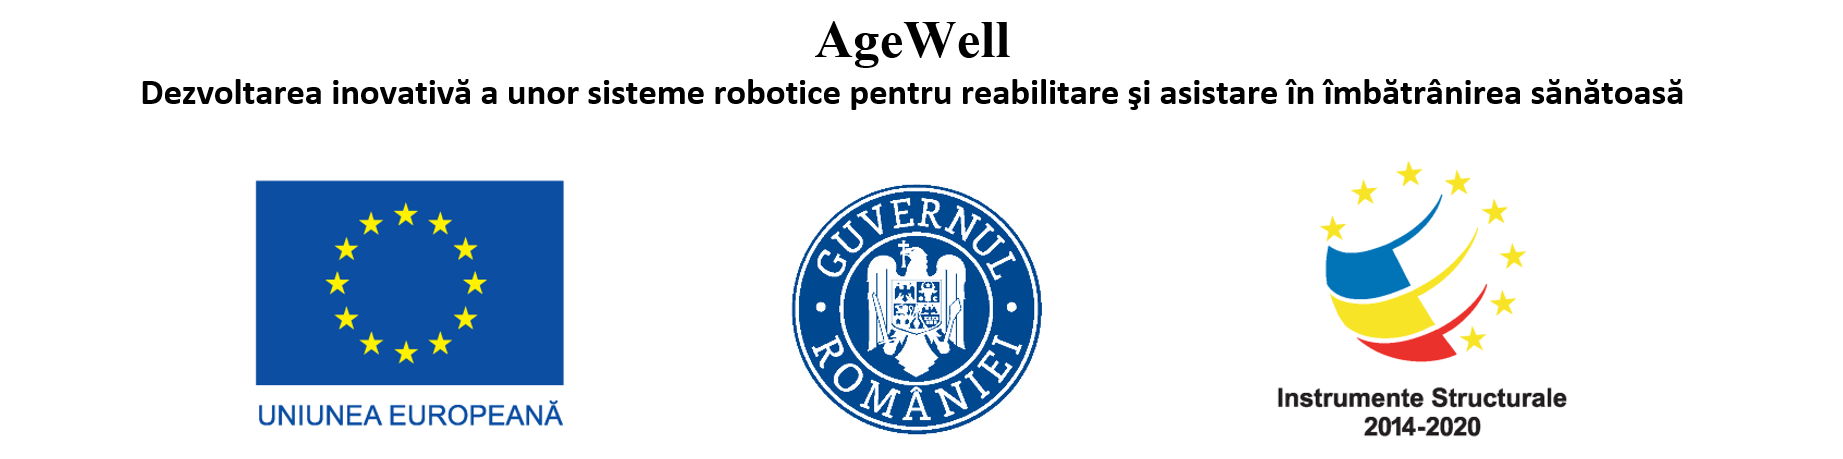 AgeWell - Dezvoltarea inovativă a unor sisteme robotice pentru reabilitare și asistare în îmbătranirea sănătoasă